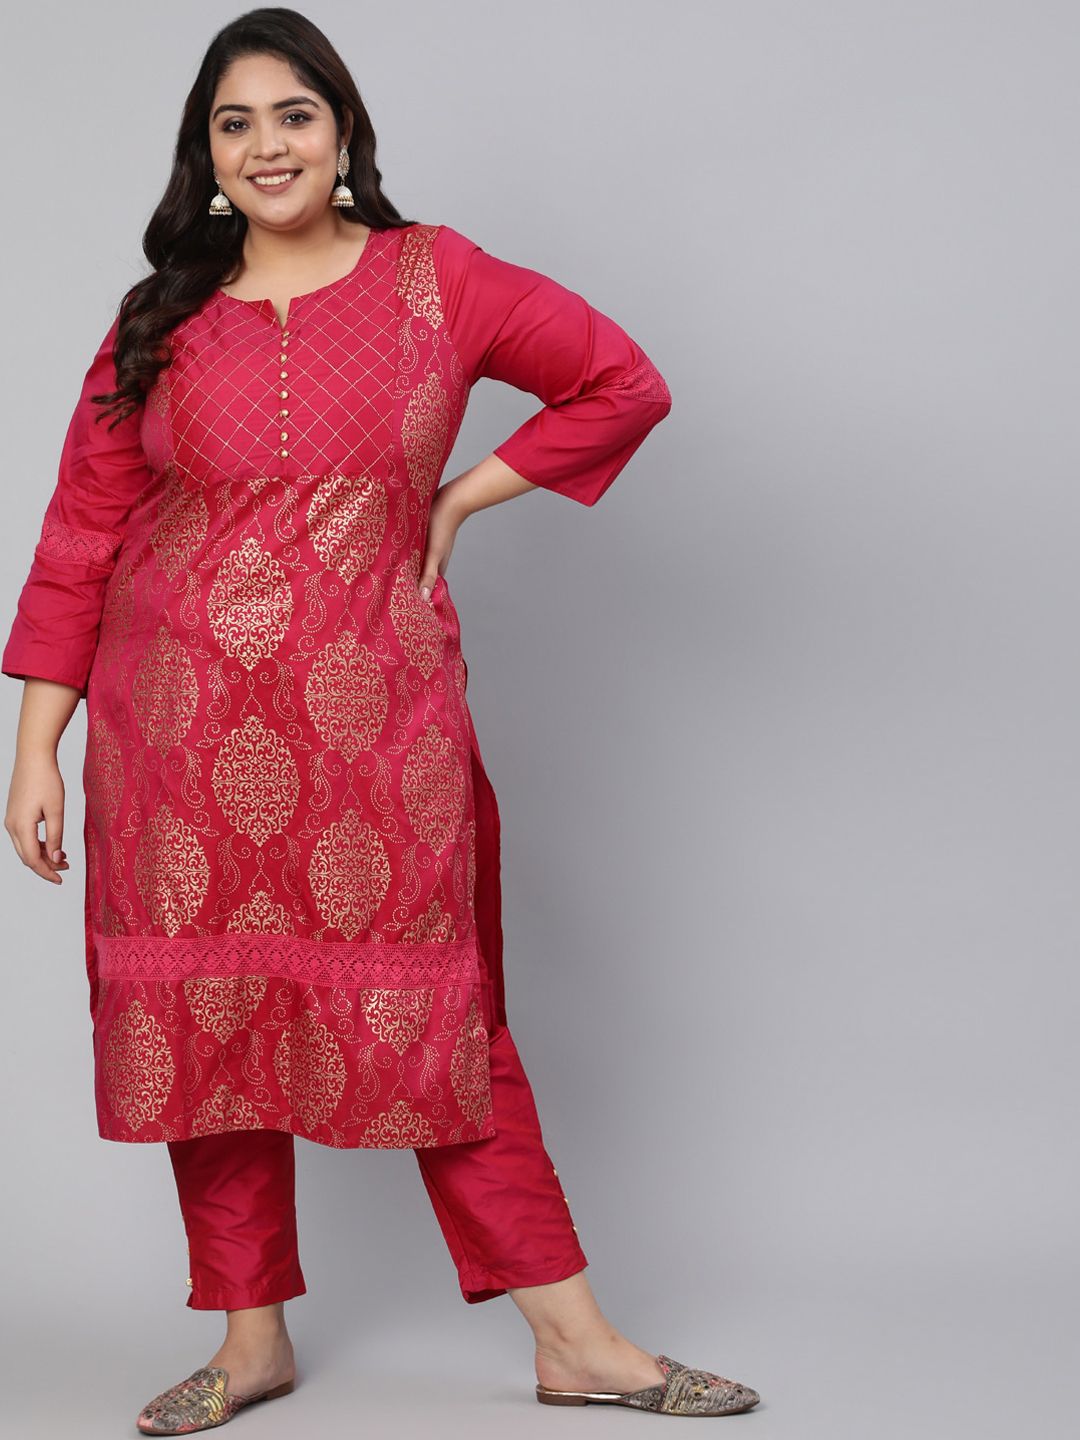 Jaipur Kurti Women Pink Ethnic Motifs Printed Kurta with Trousers Price in India